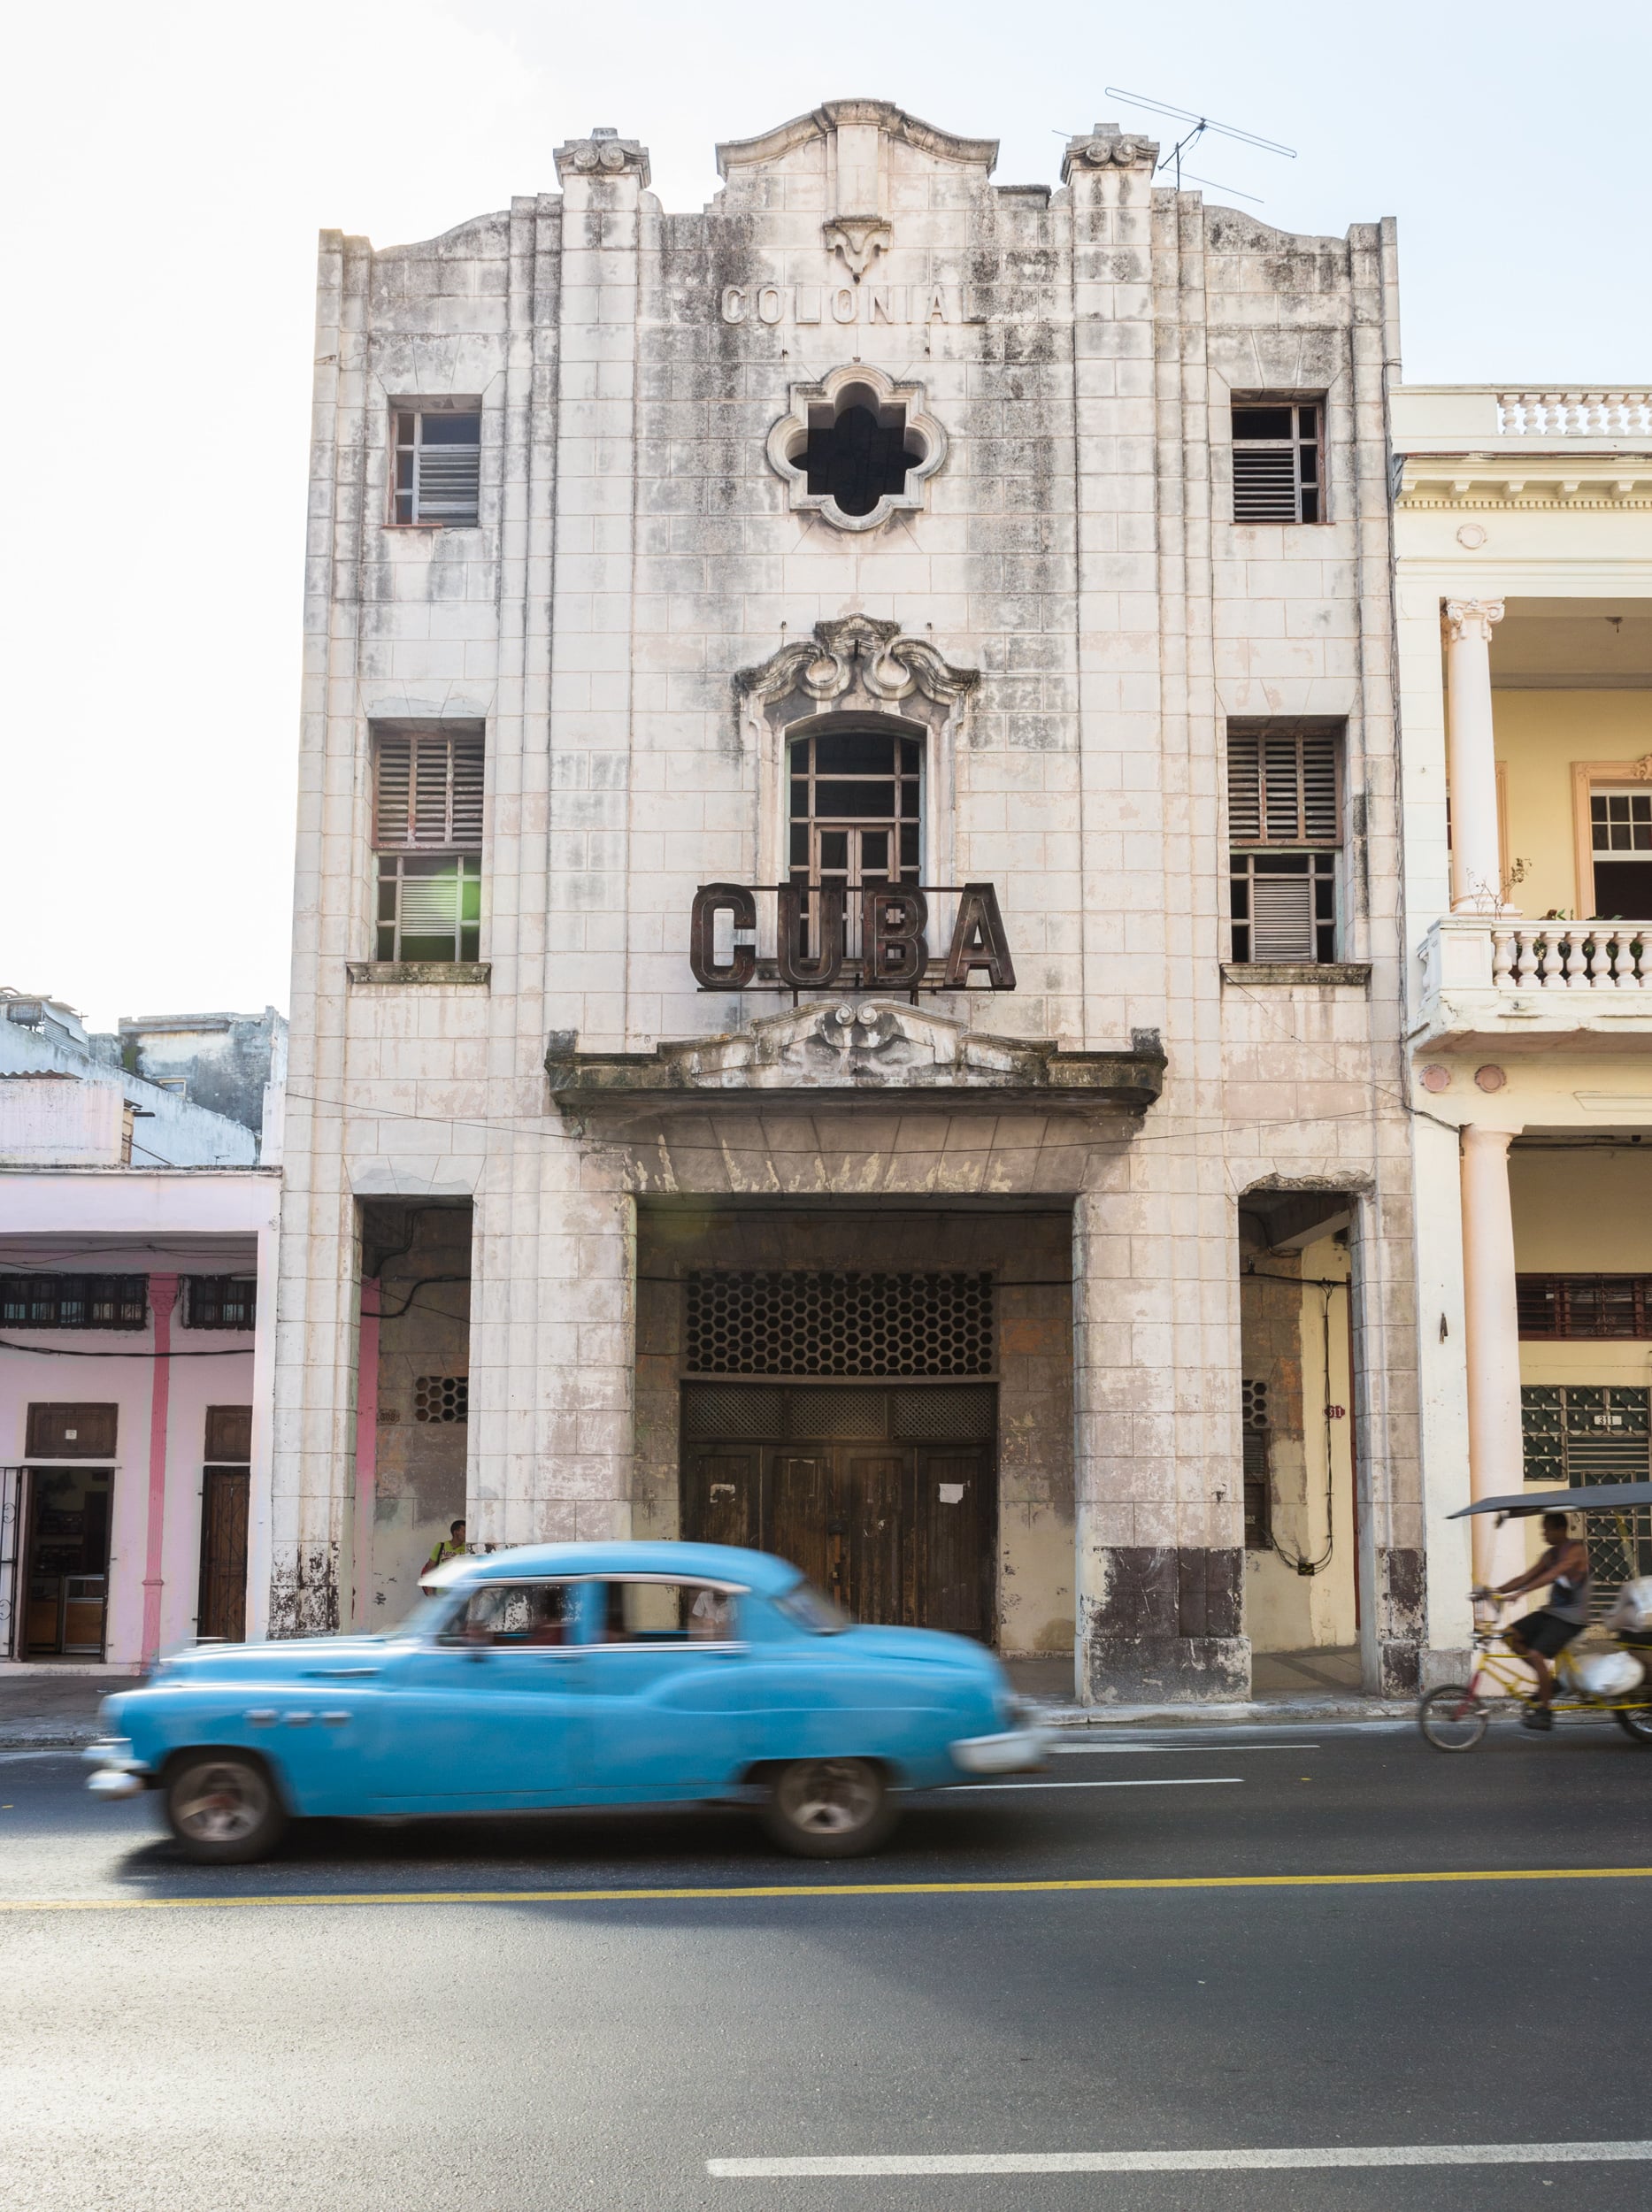  La Habana, Cuba. 2015 